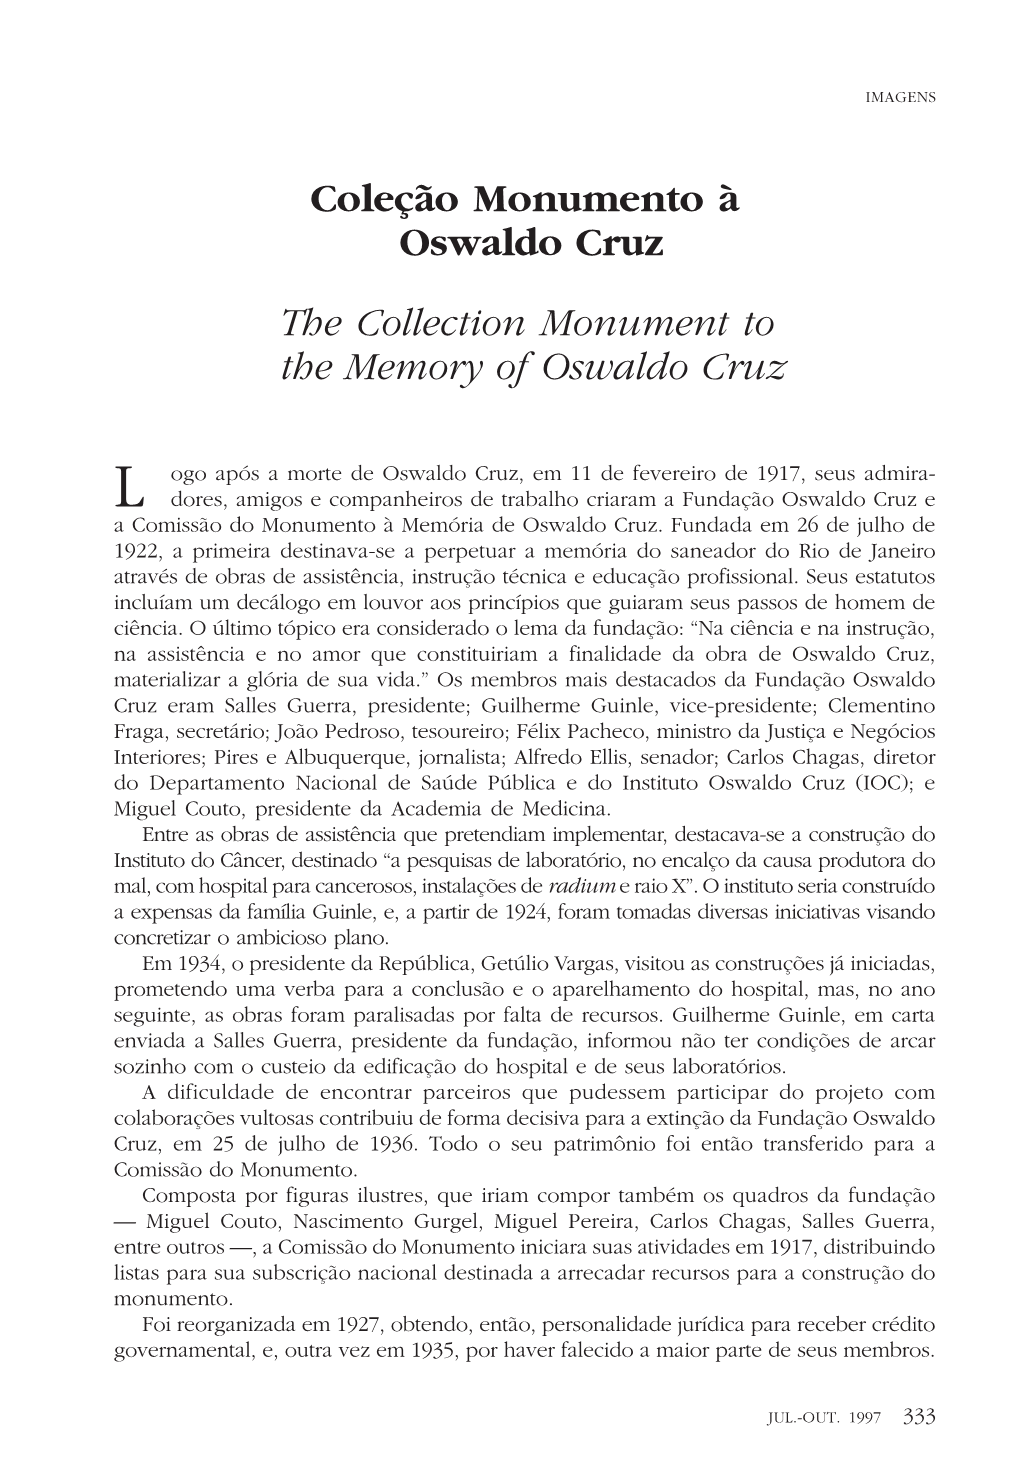 Coleção Monumento À Oswaldo Cruz